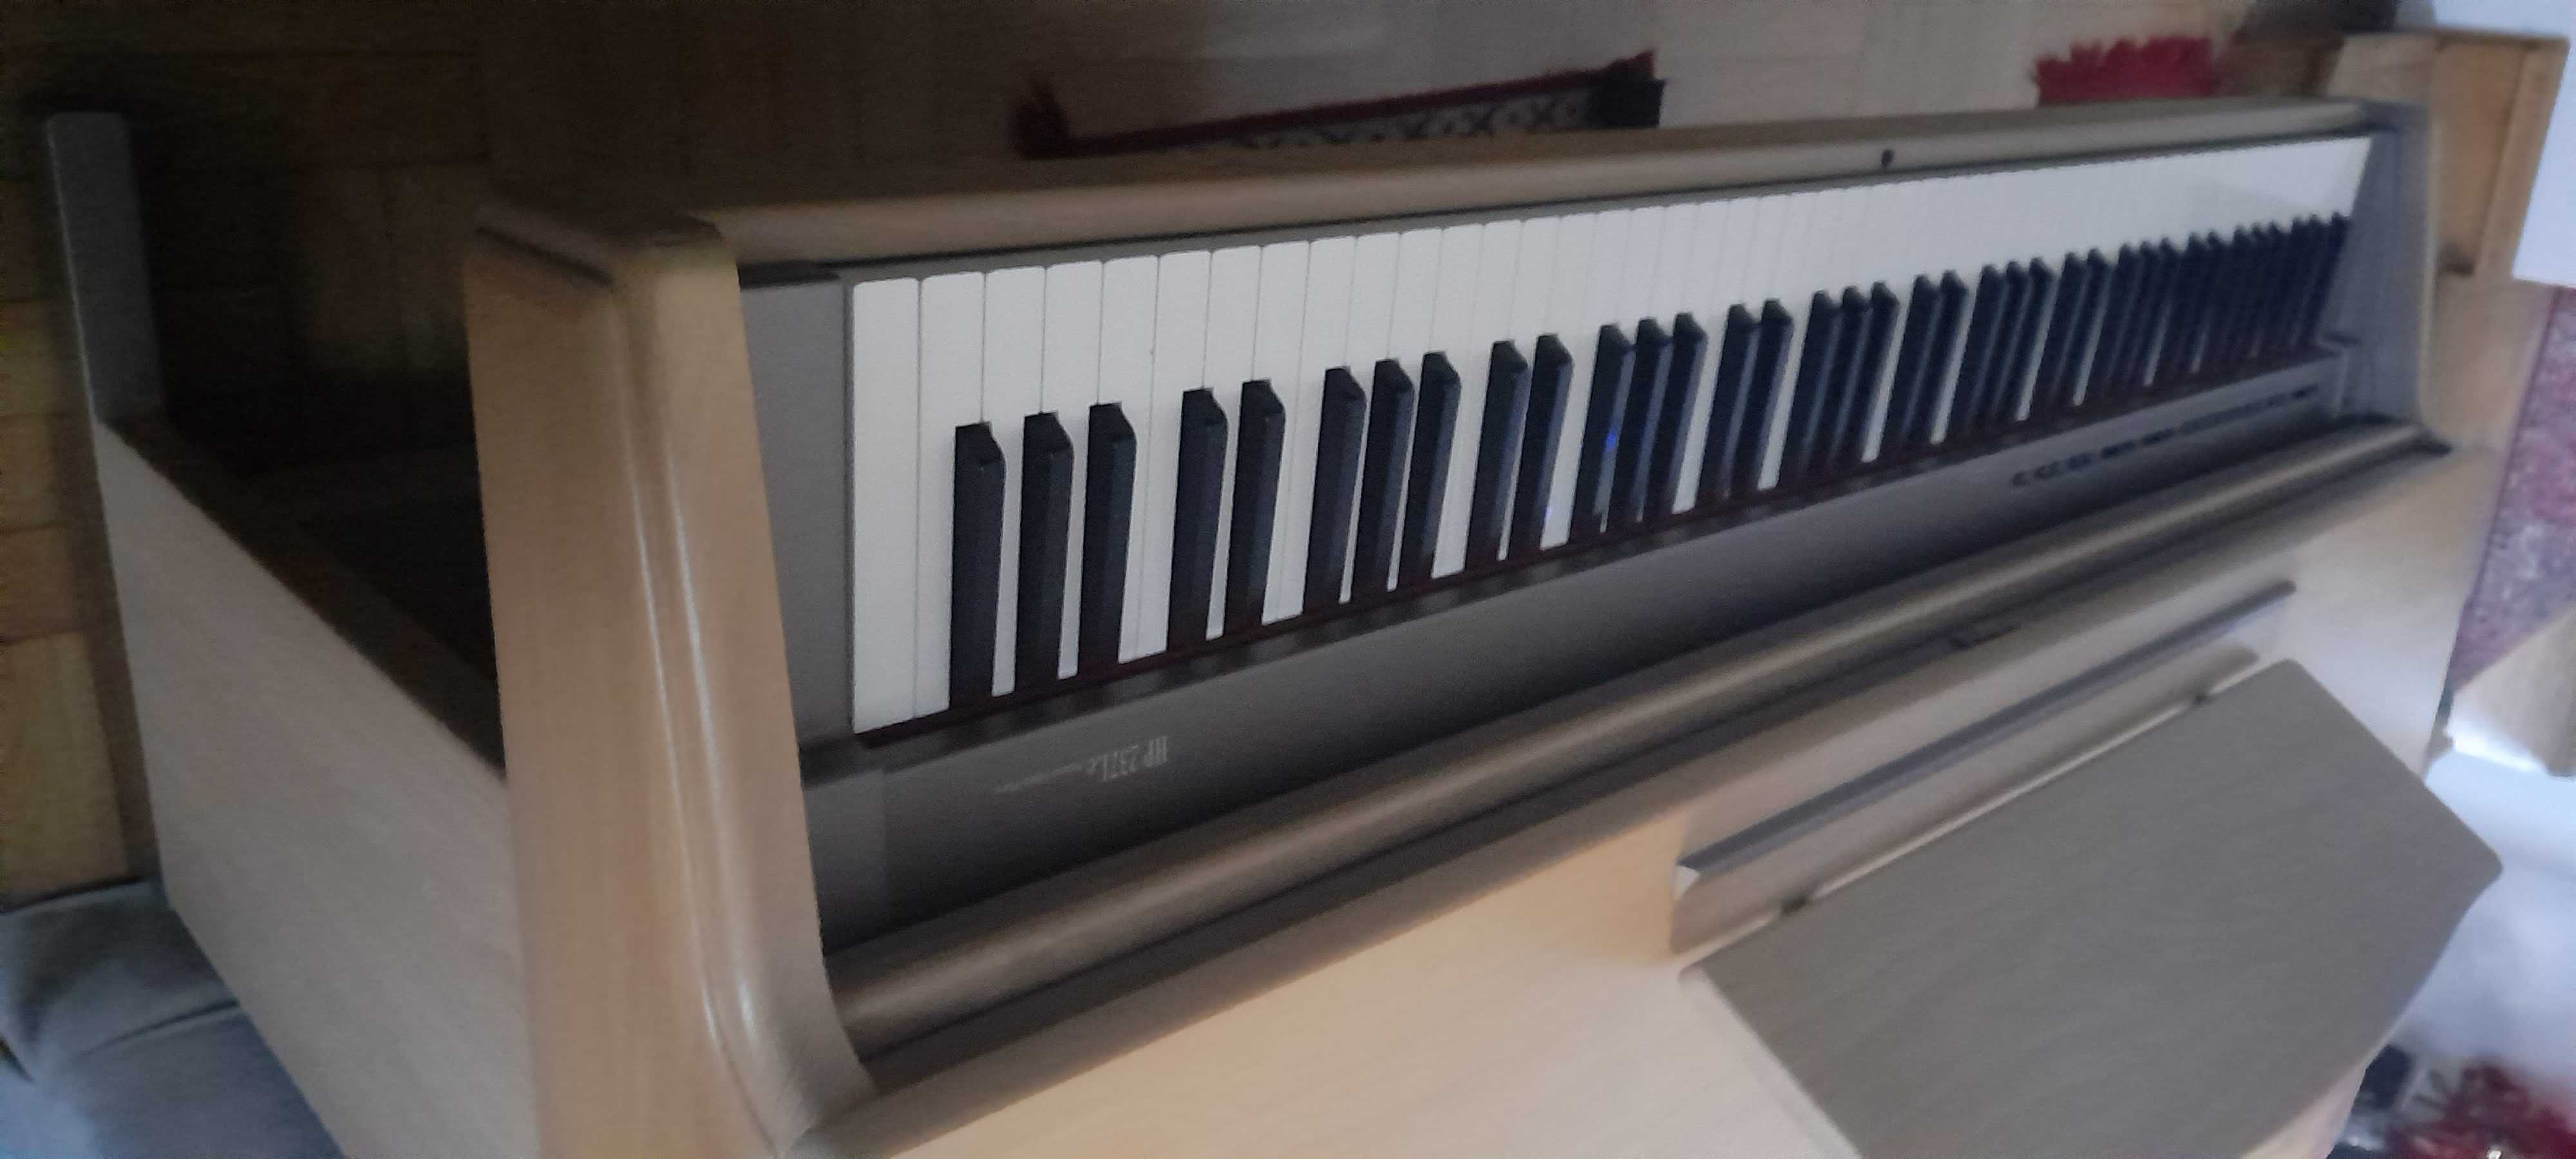 Pianino Roland HP 237 białe stan idealny przywiezione z zachodu